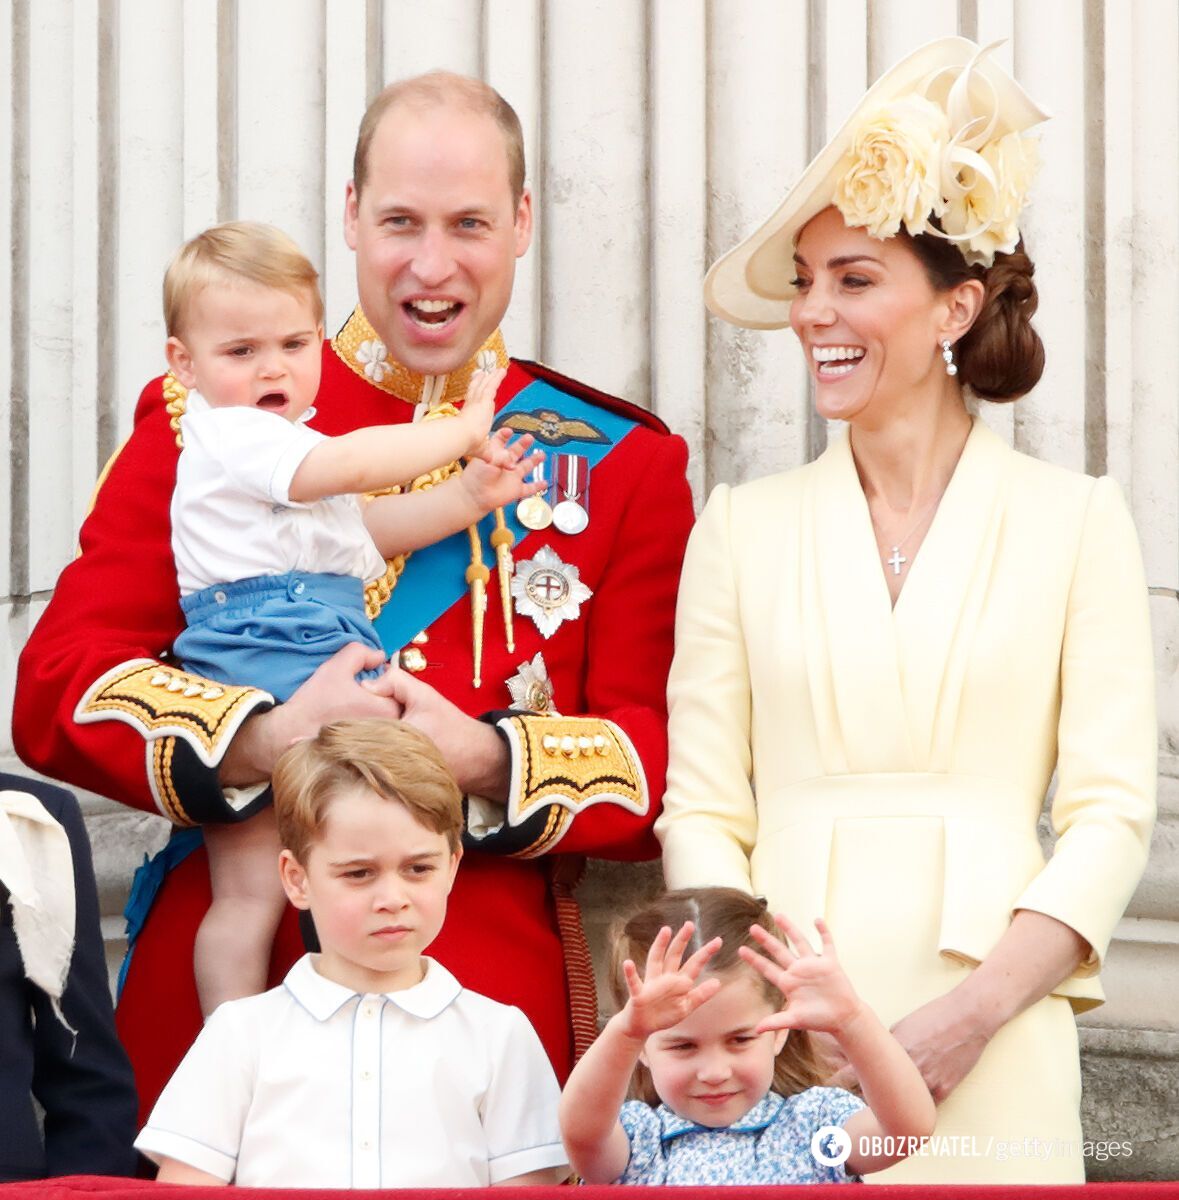 Książę Harry i Meghan Markle zmienili nazwisko swoich dzieci: wcześniej było to Mountbatten-Windsor.